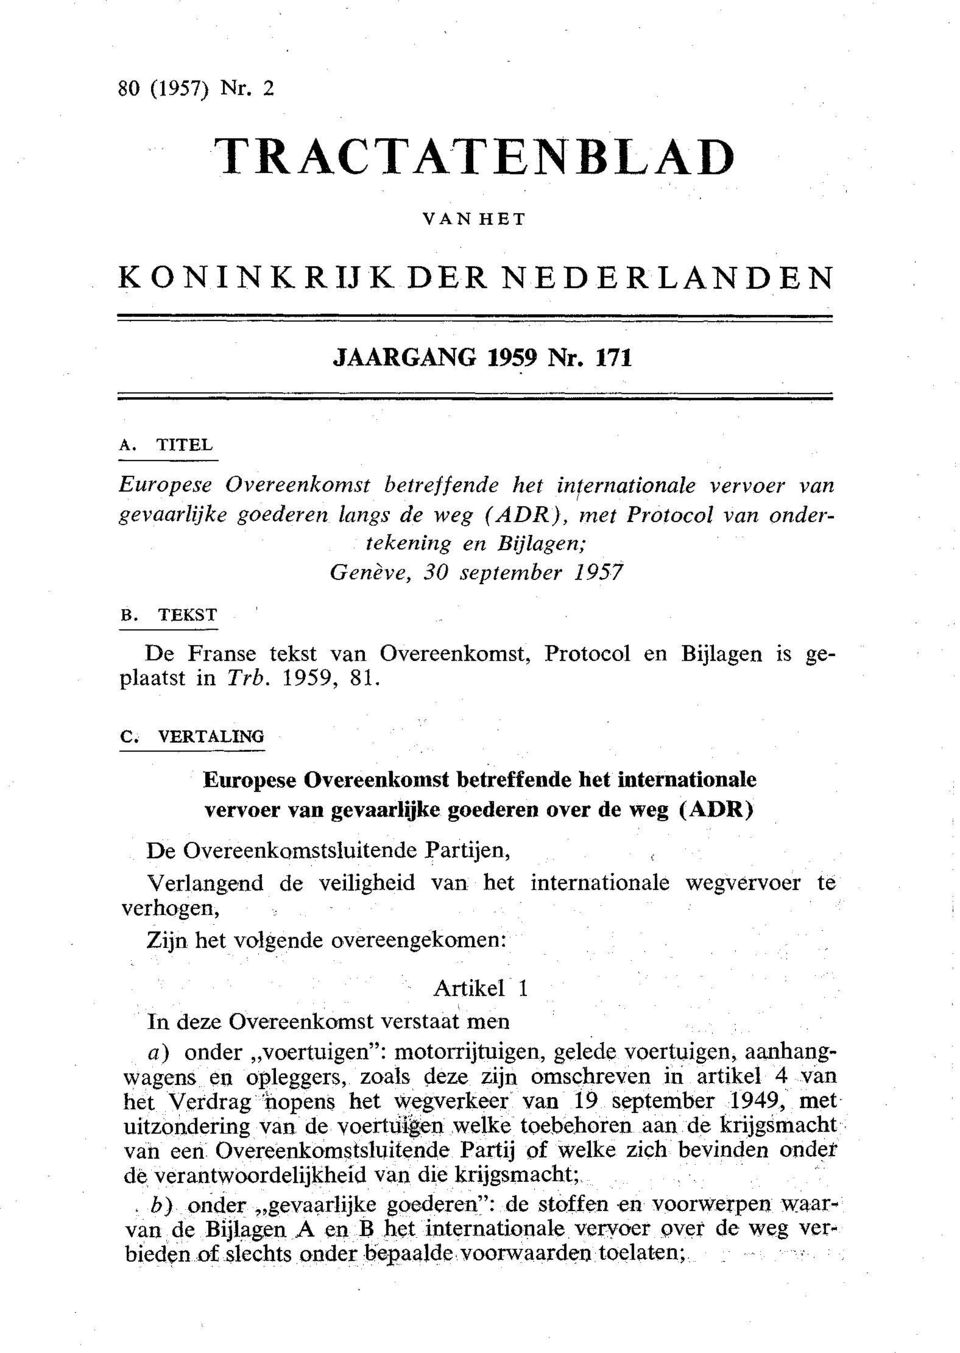 TEKST De Franse tekst van Overeenkomst, Protocol en Bijlagen is geplaatst in Trb. 1959, 81. C.